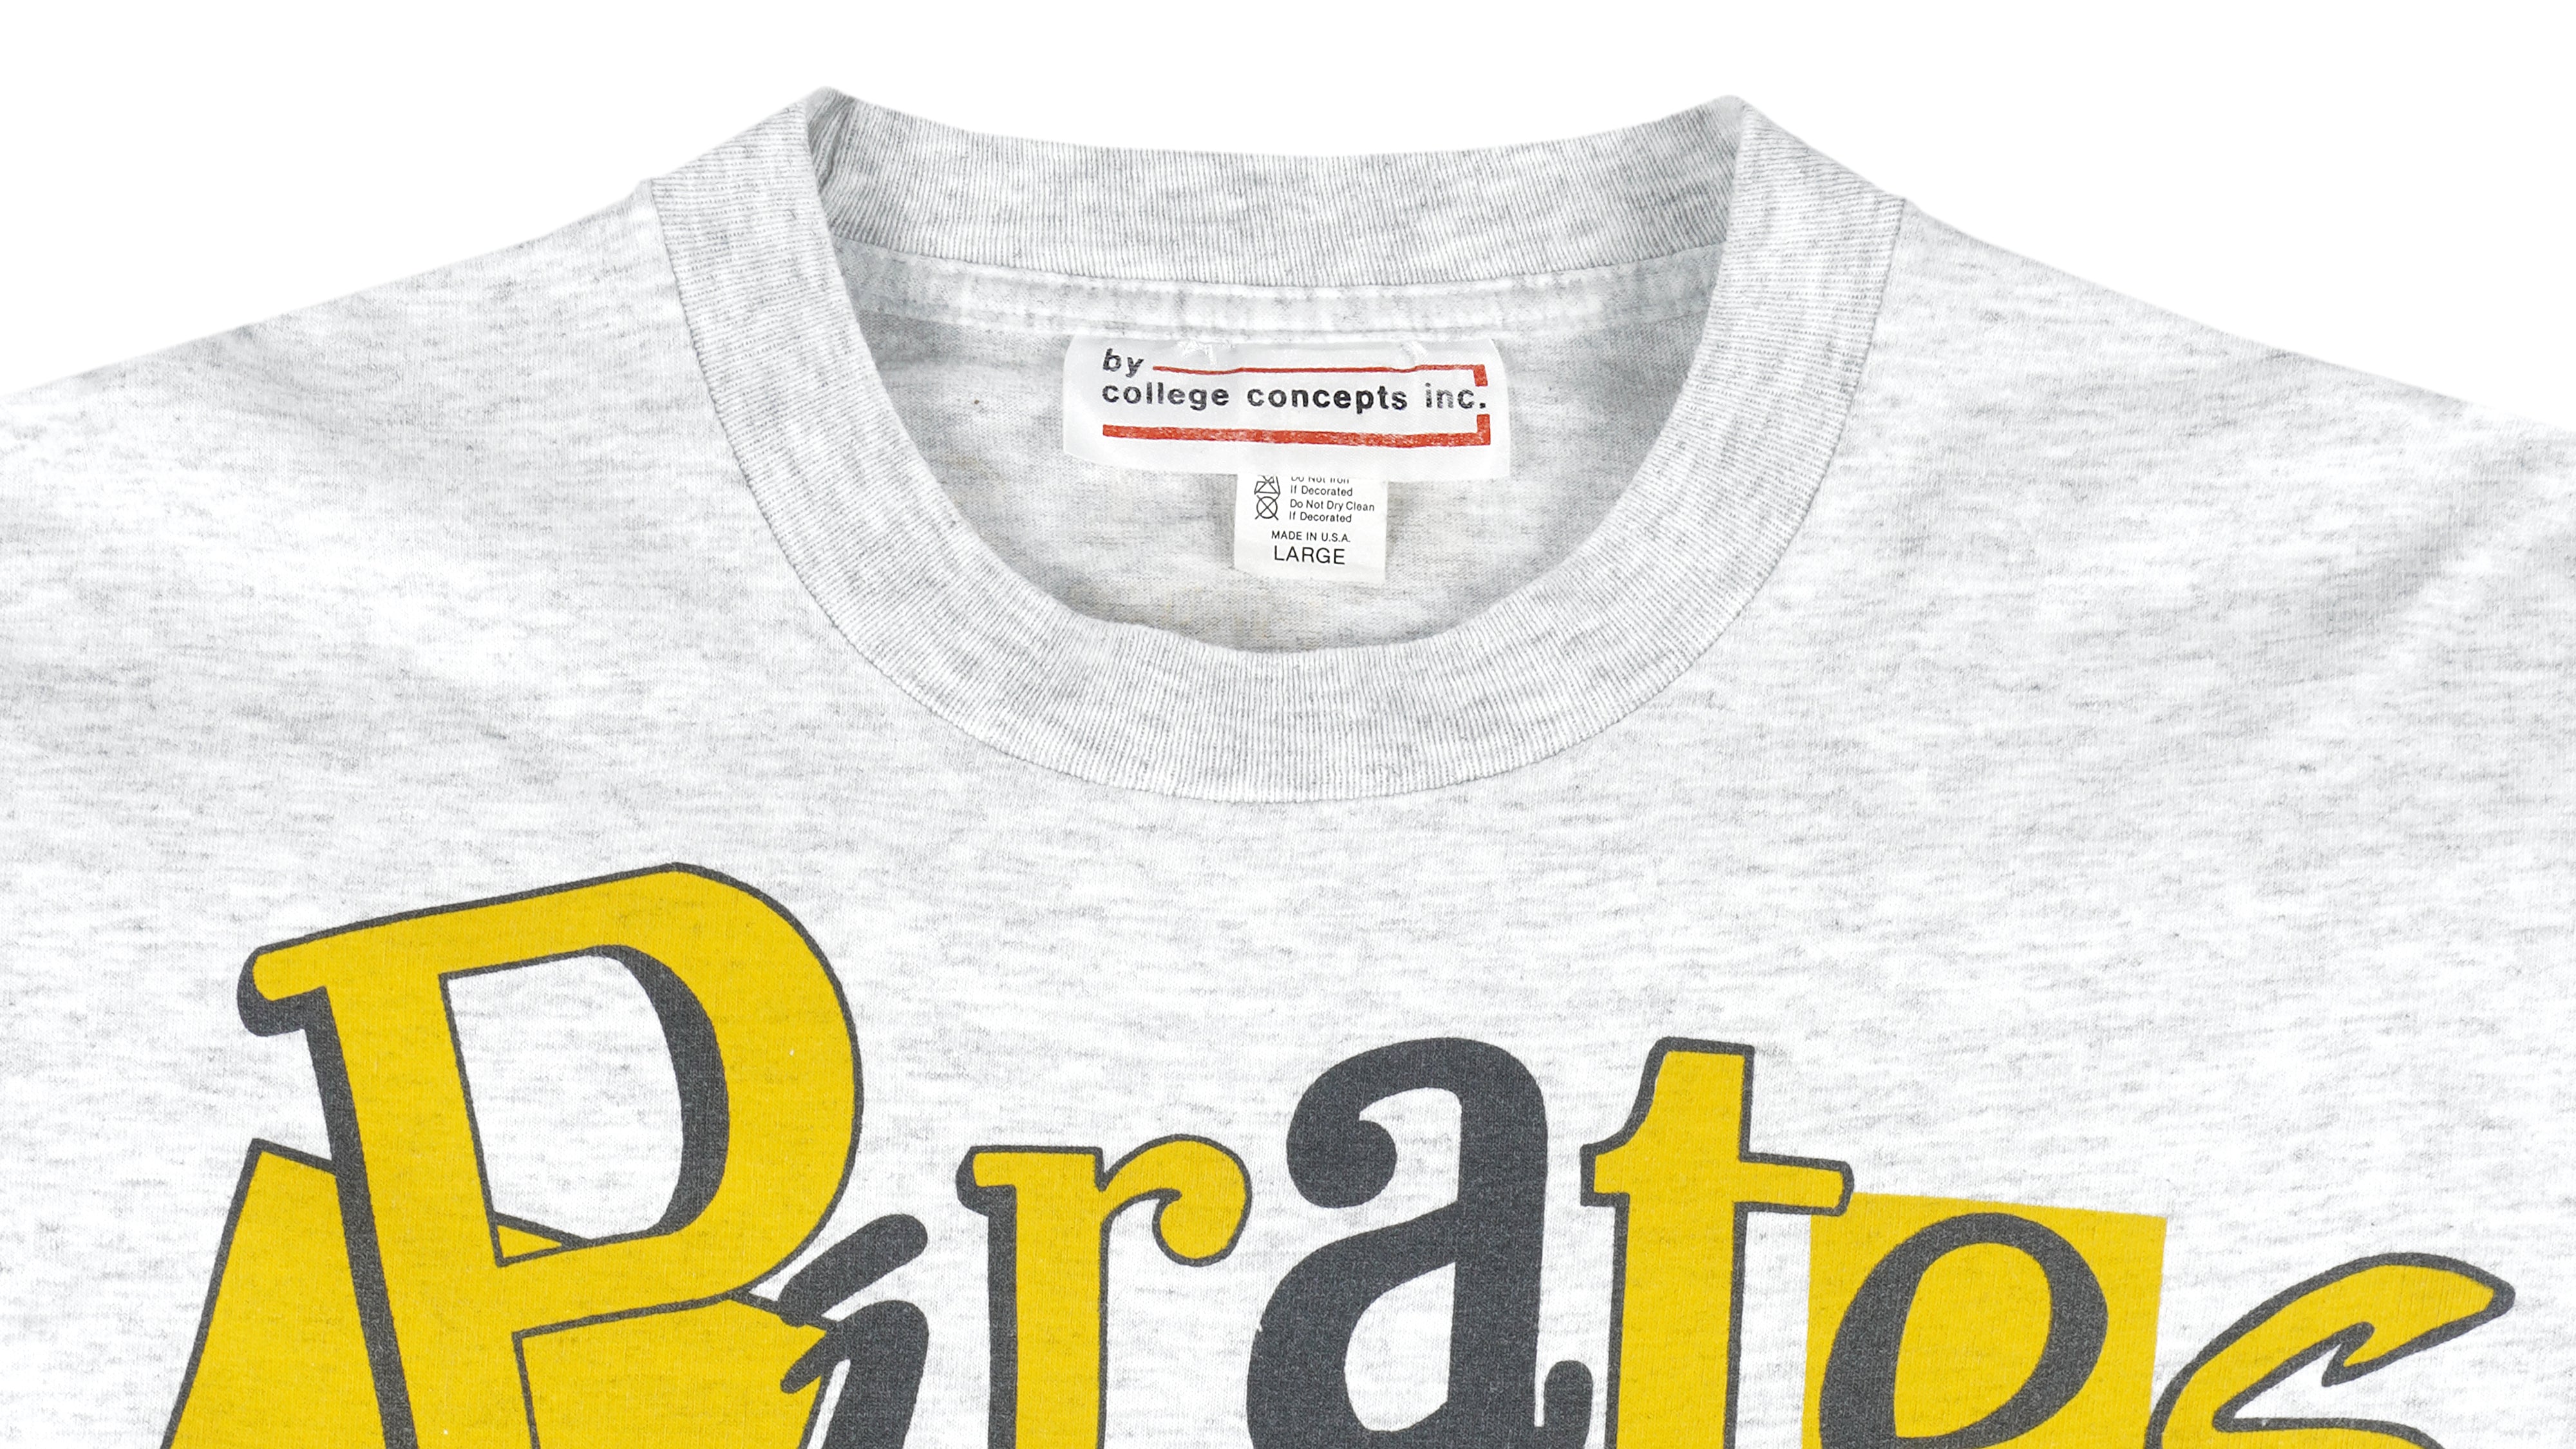 vintage pittsburgh pirates shirt